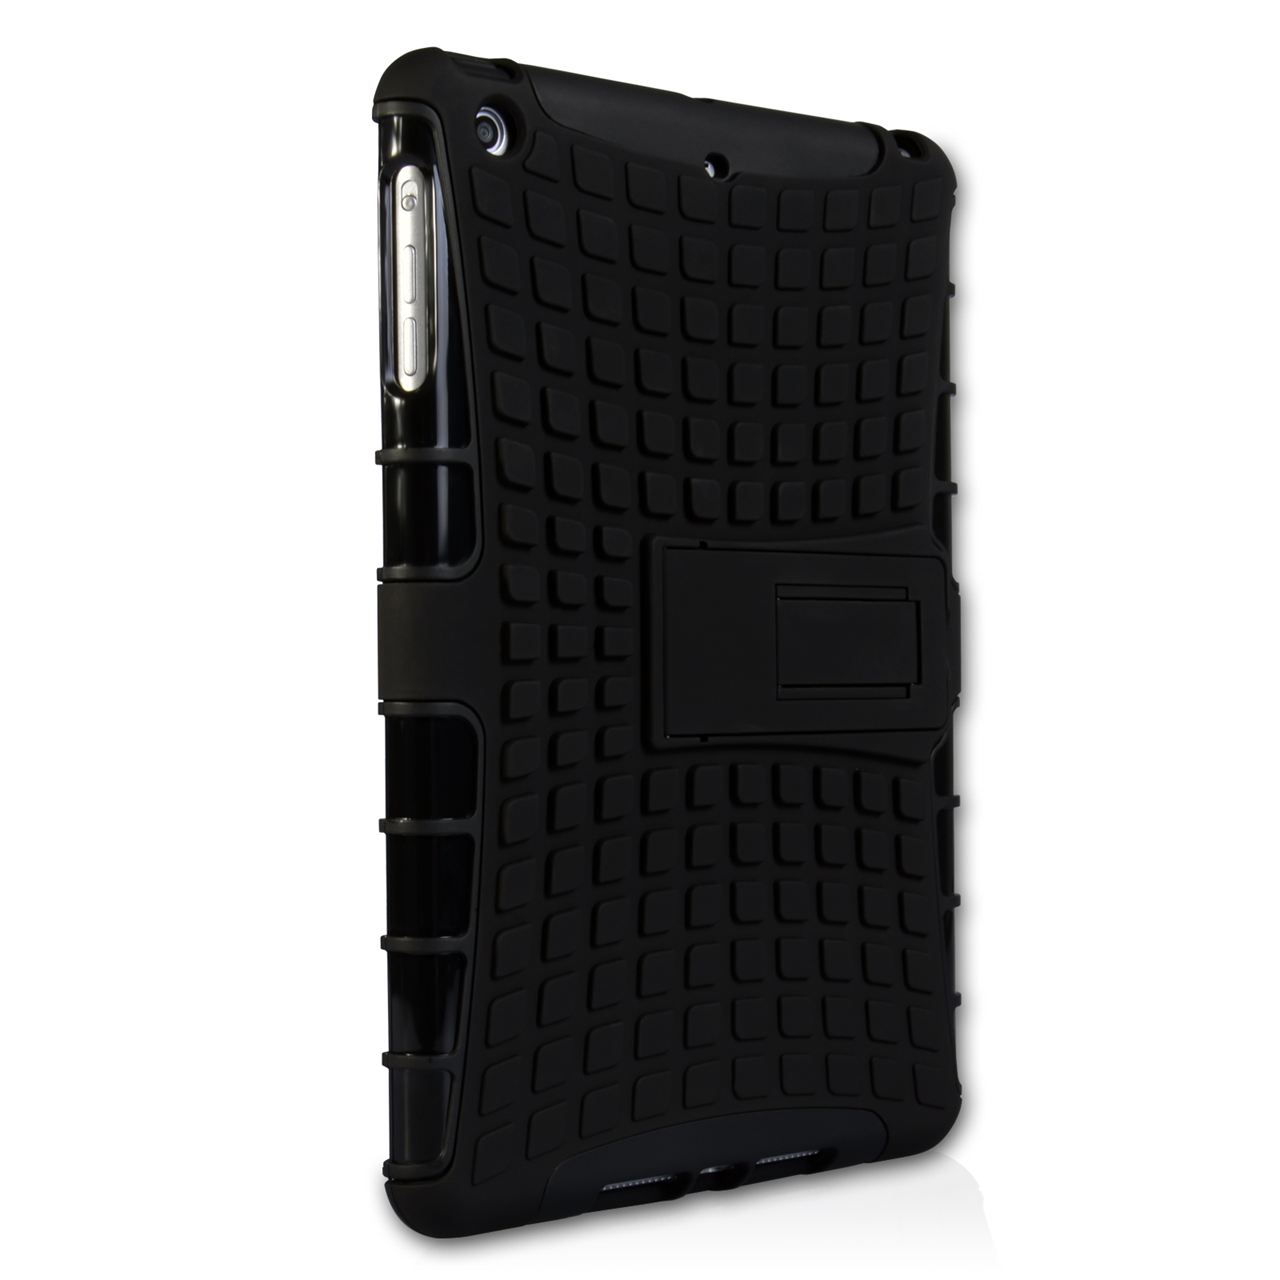 Caseflex iPad Mini 2 Tough Stand Cover - Black